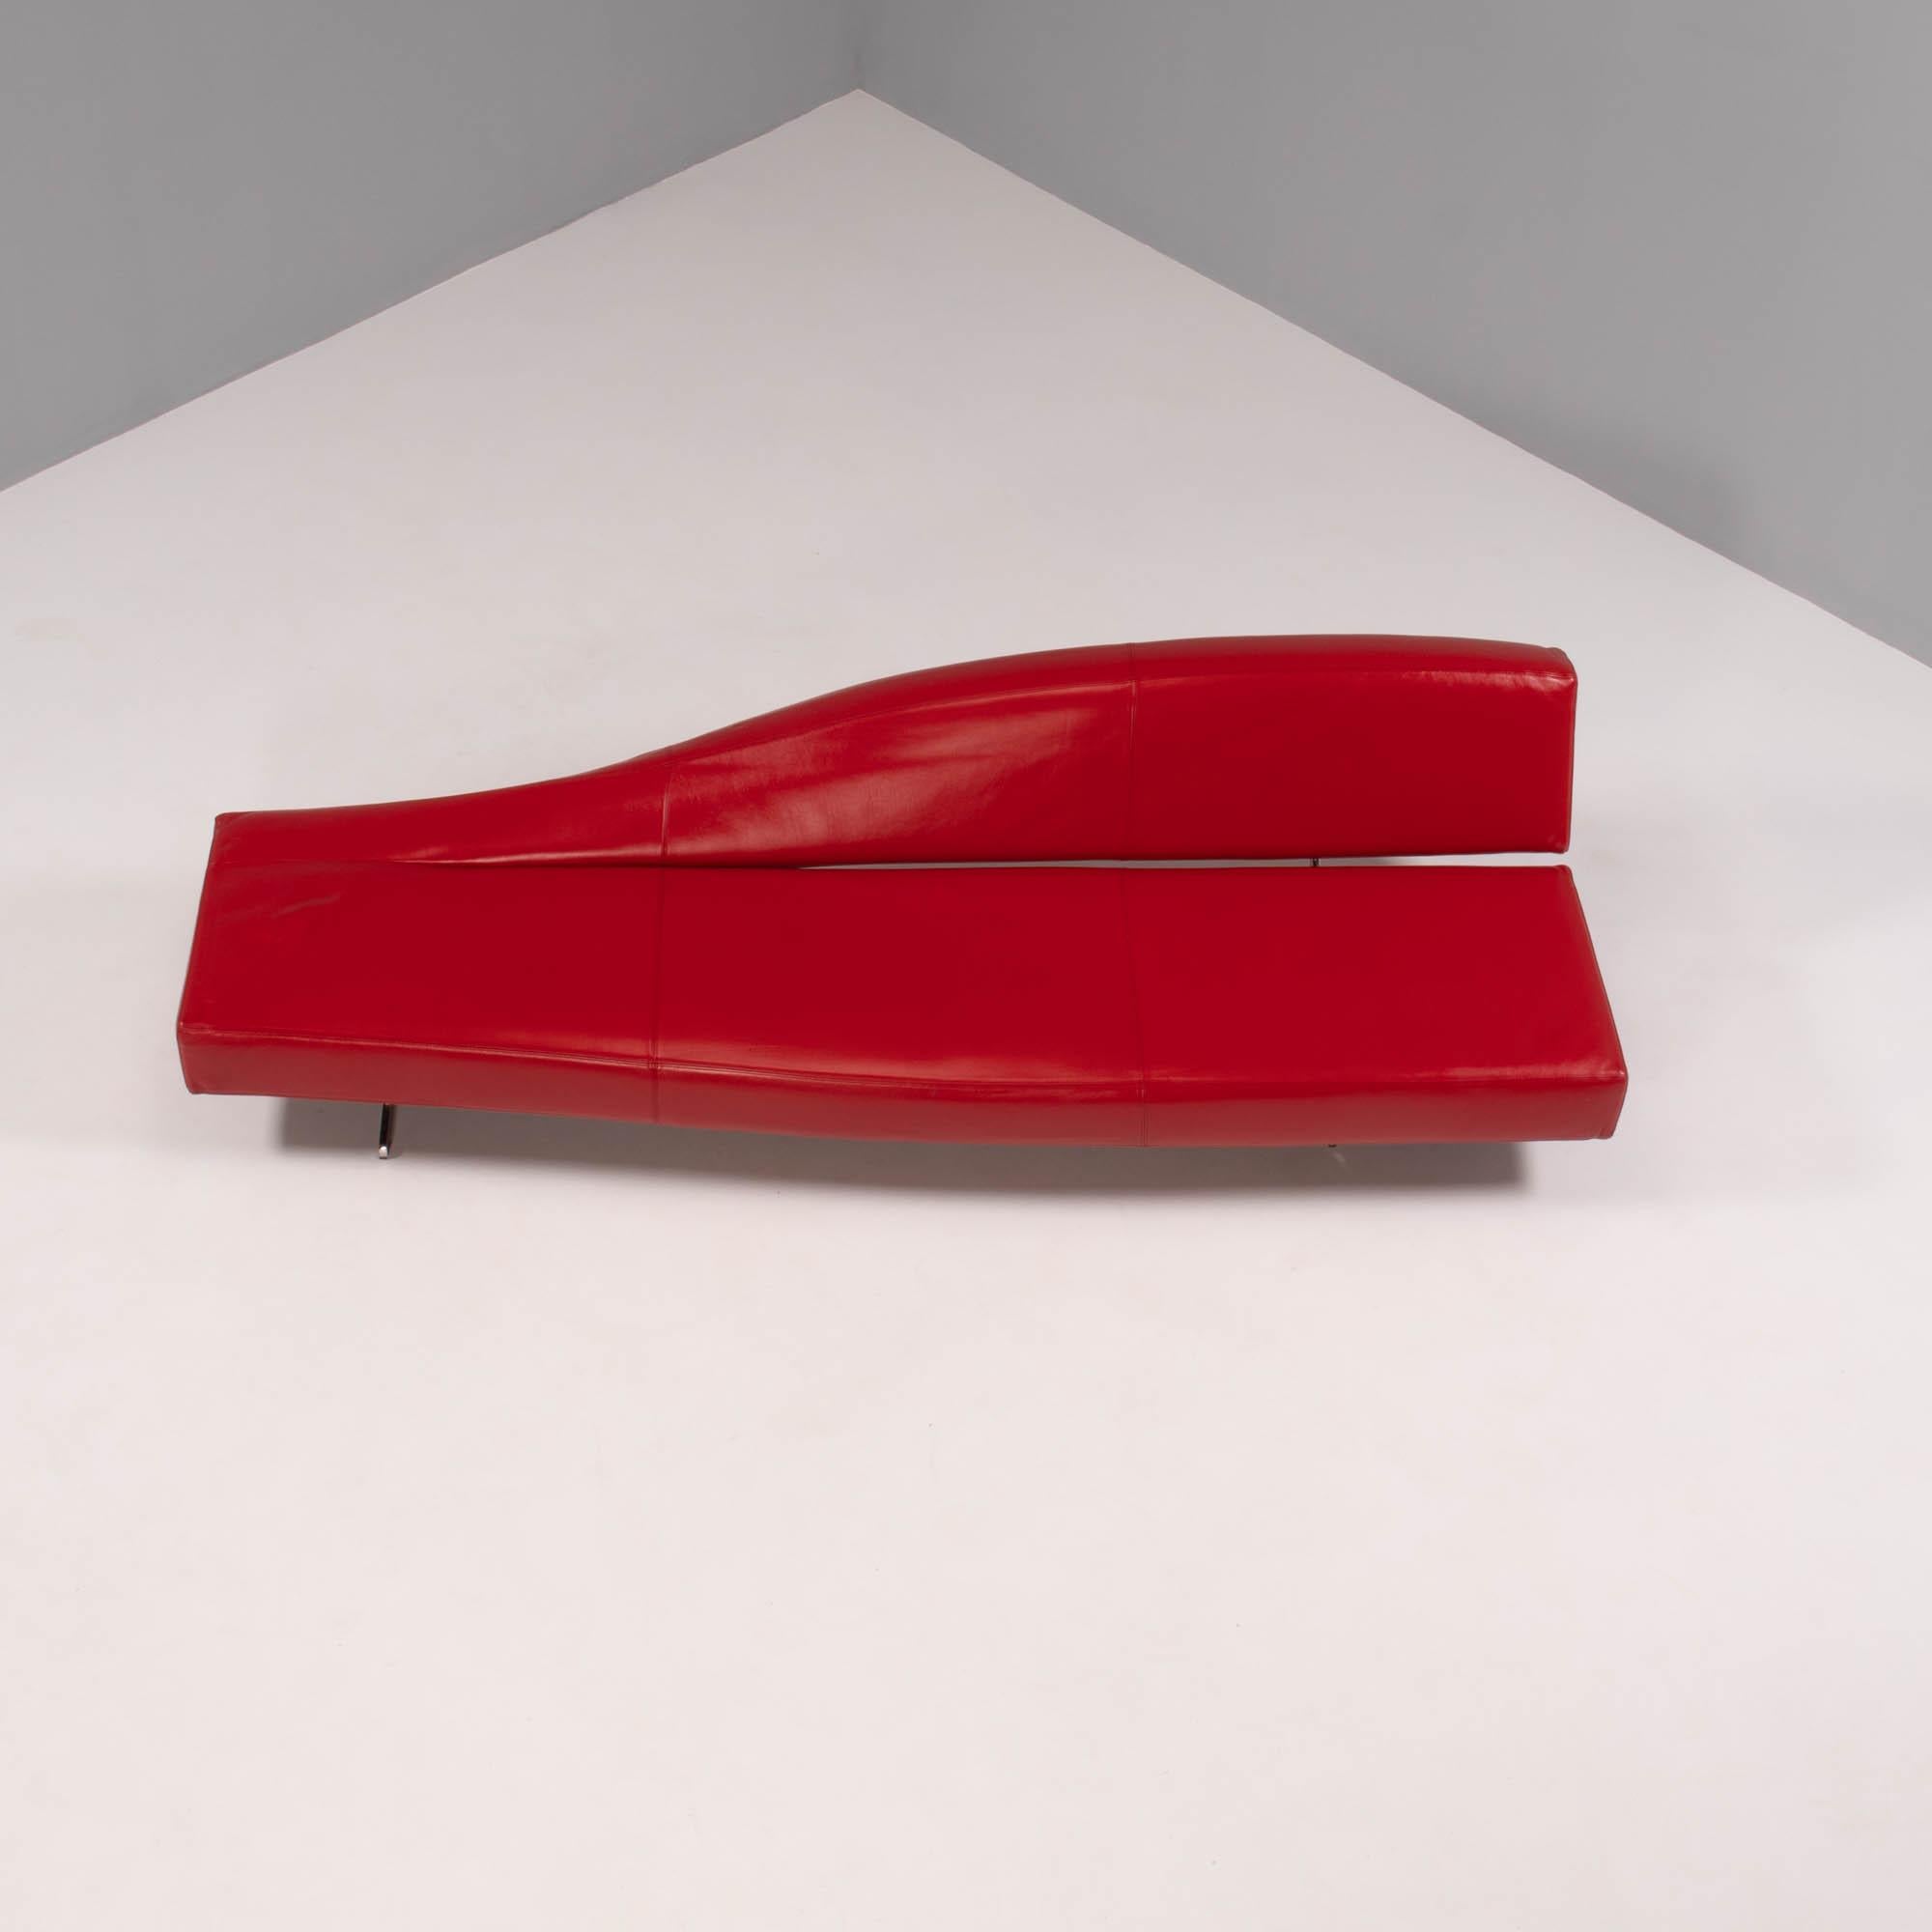 Conçu à l'origine en 2005 par Jean-Marie Massuad, le canapé Aspen est une pièce élégante et sophistiquée de design moderne.

Rembourré en cuir rouge, le canapé donne l'illusion d'être construit à partir d'une seule pièce continue.

Le dossier